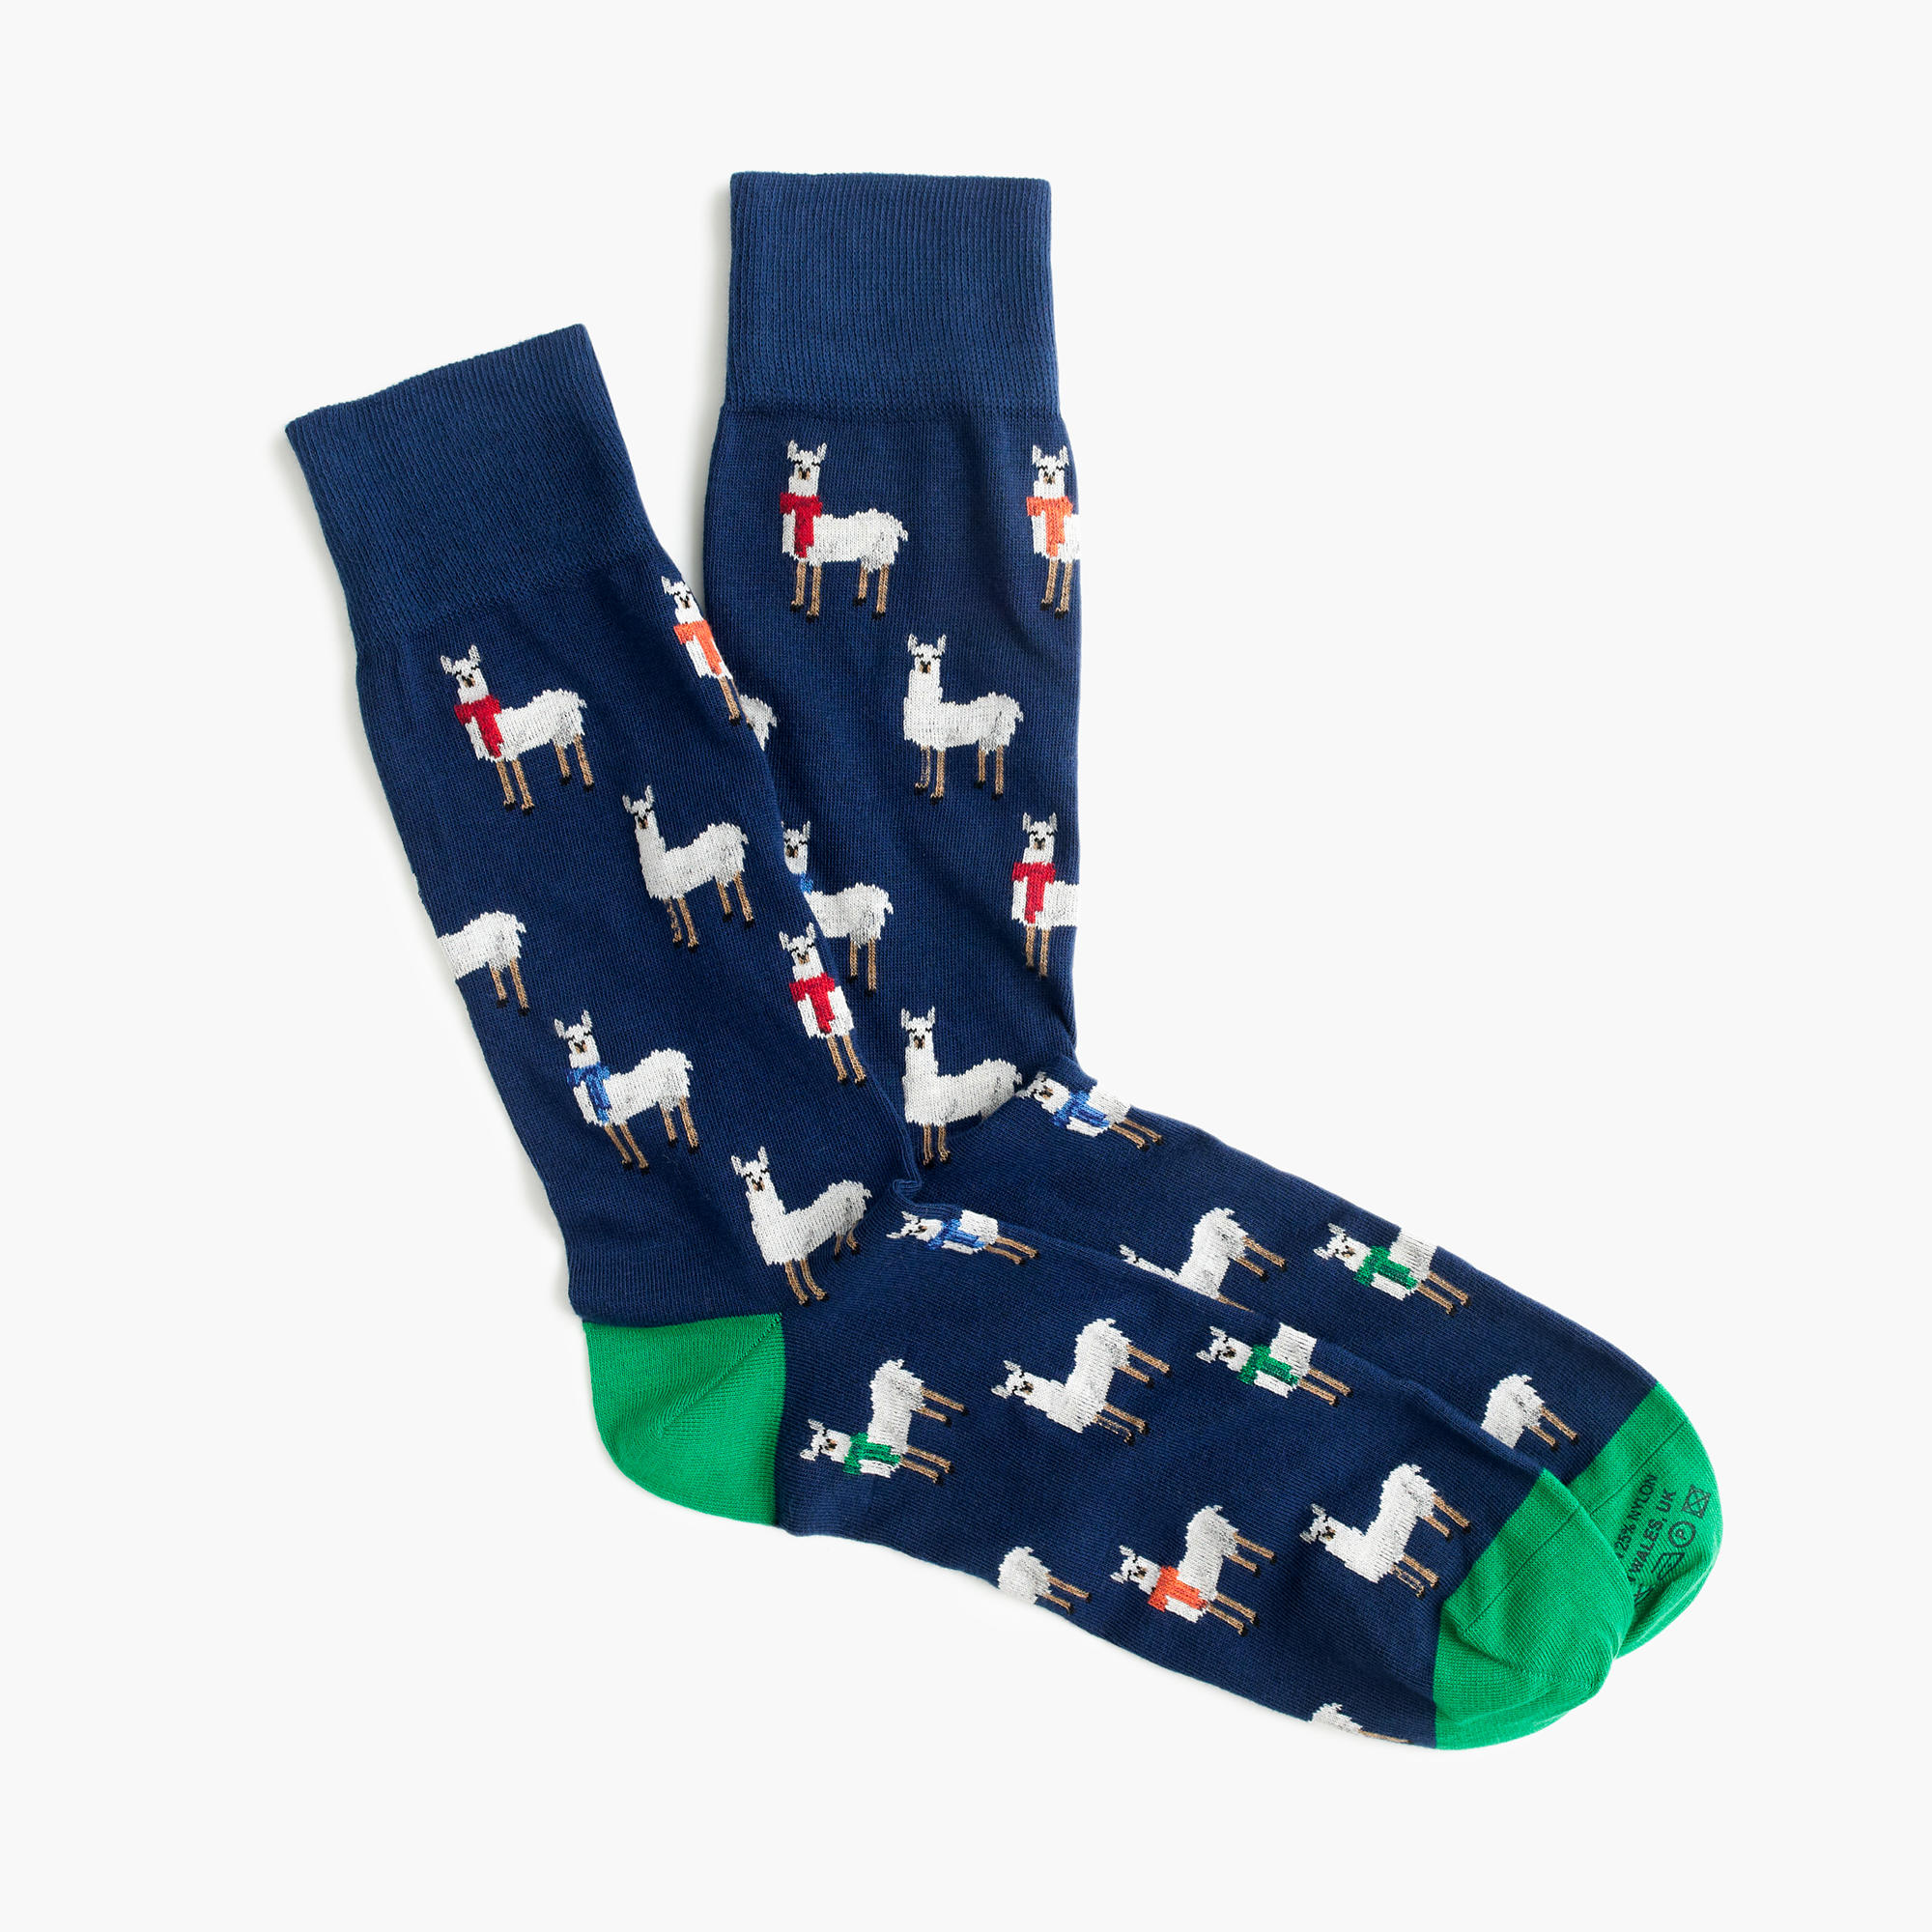 llama-socks